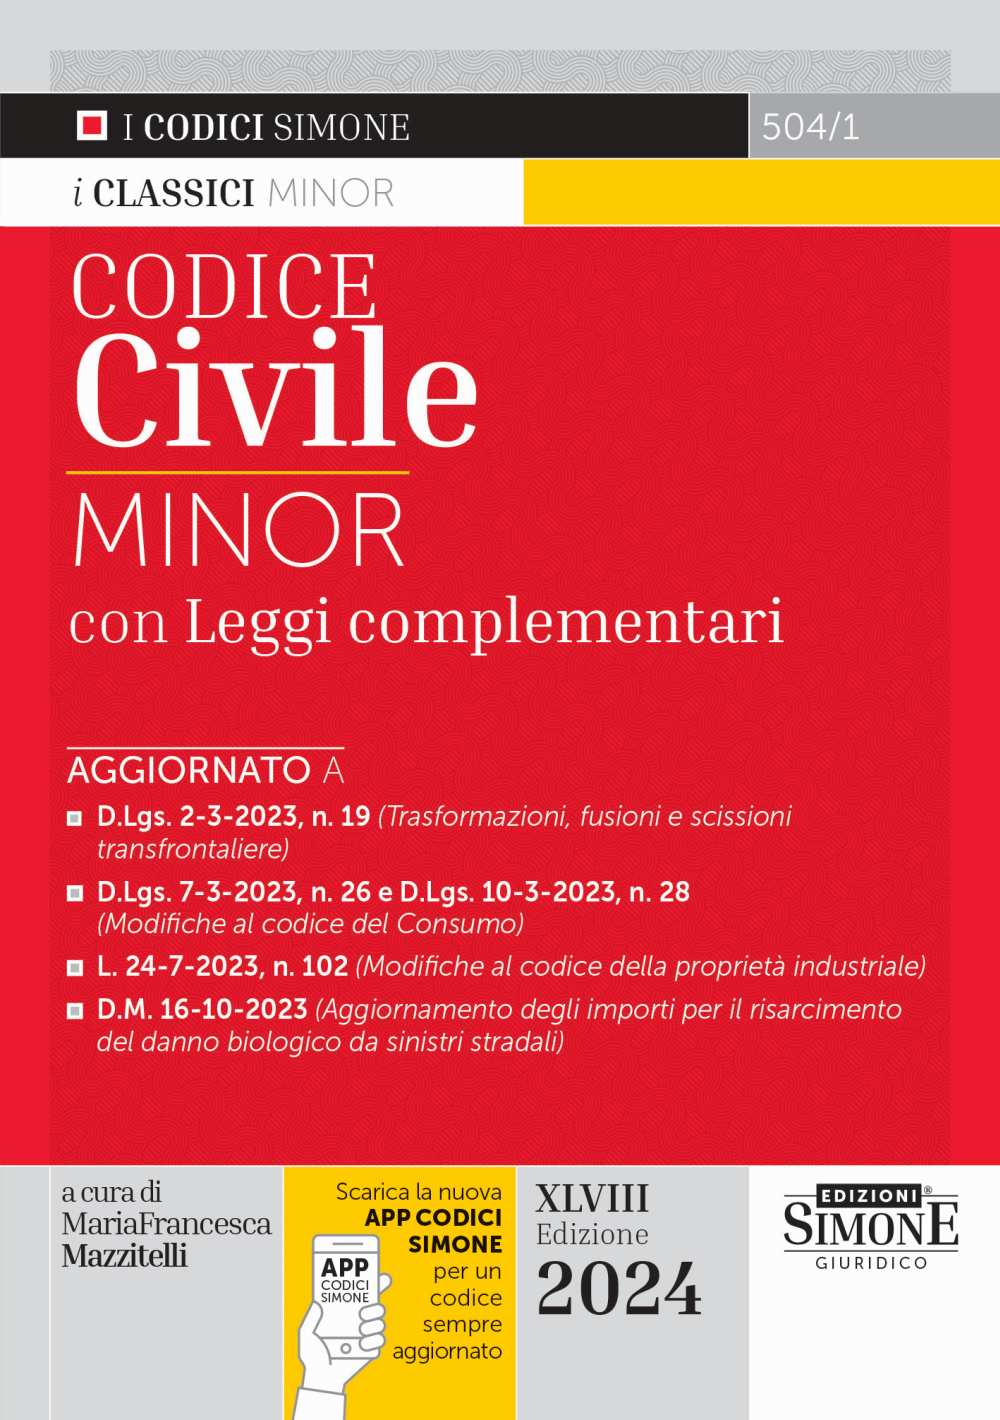 Codice Civile Minor 2024 - Edizioni Simone